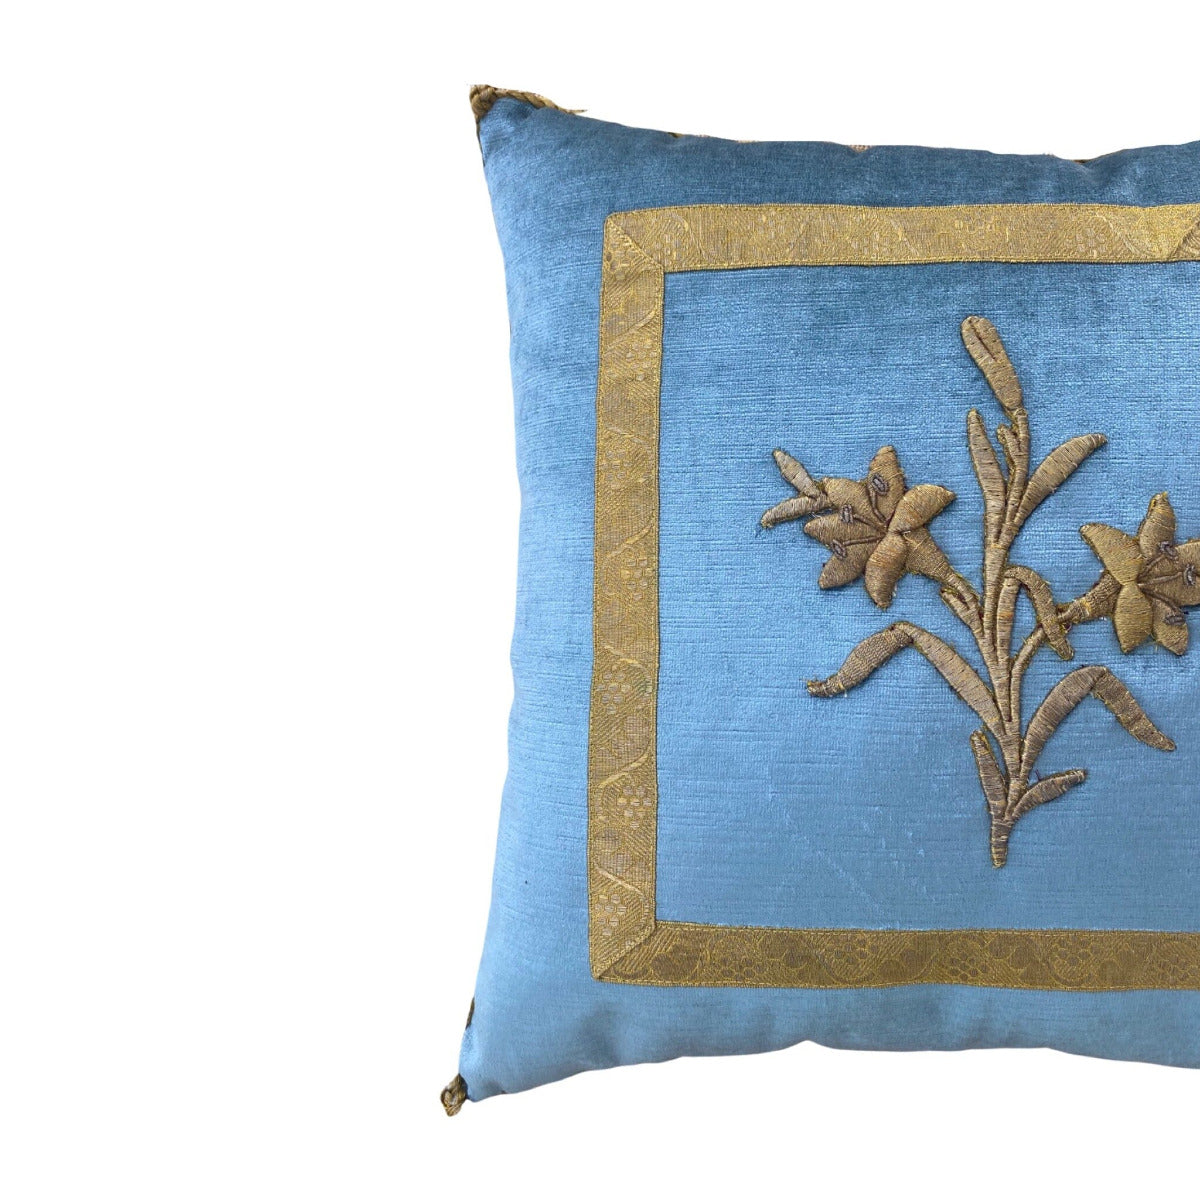 Antique European Raised Gold Metallic Embroidery (#E020323 | 18 x 18') New Pillows B. Viz Design 